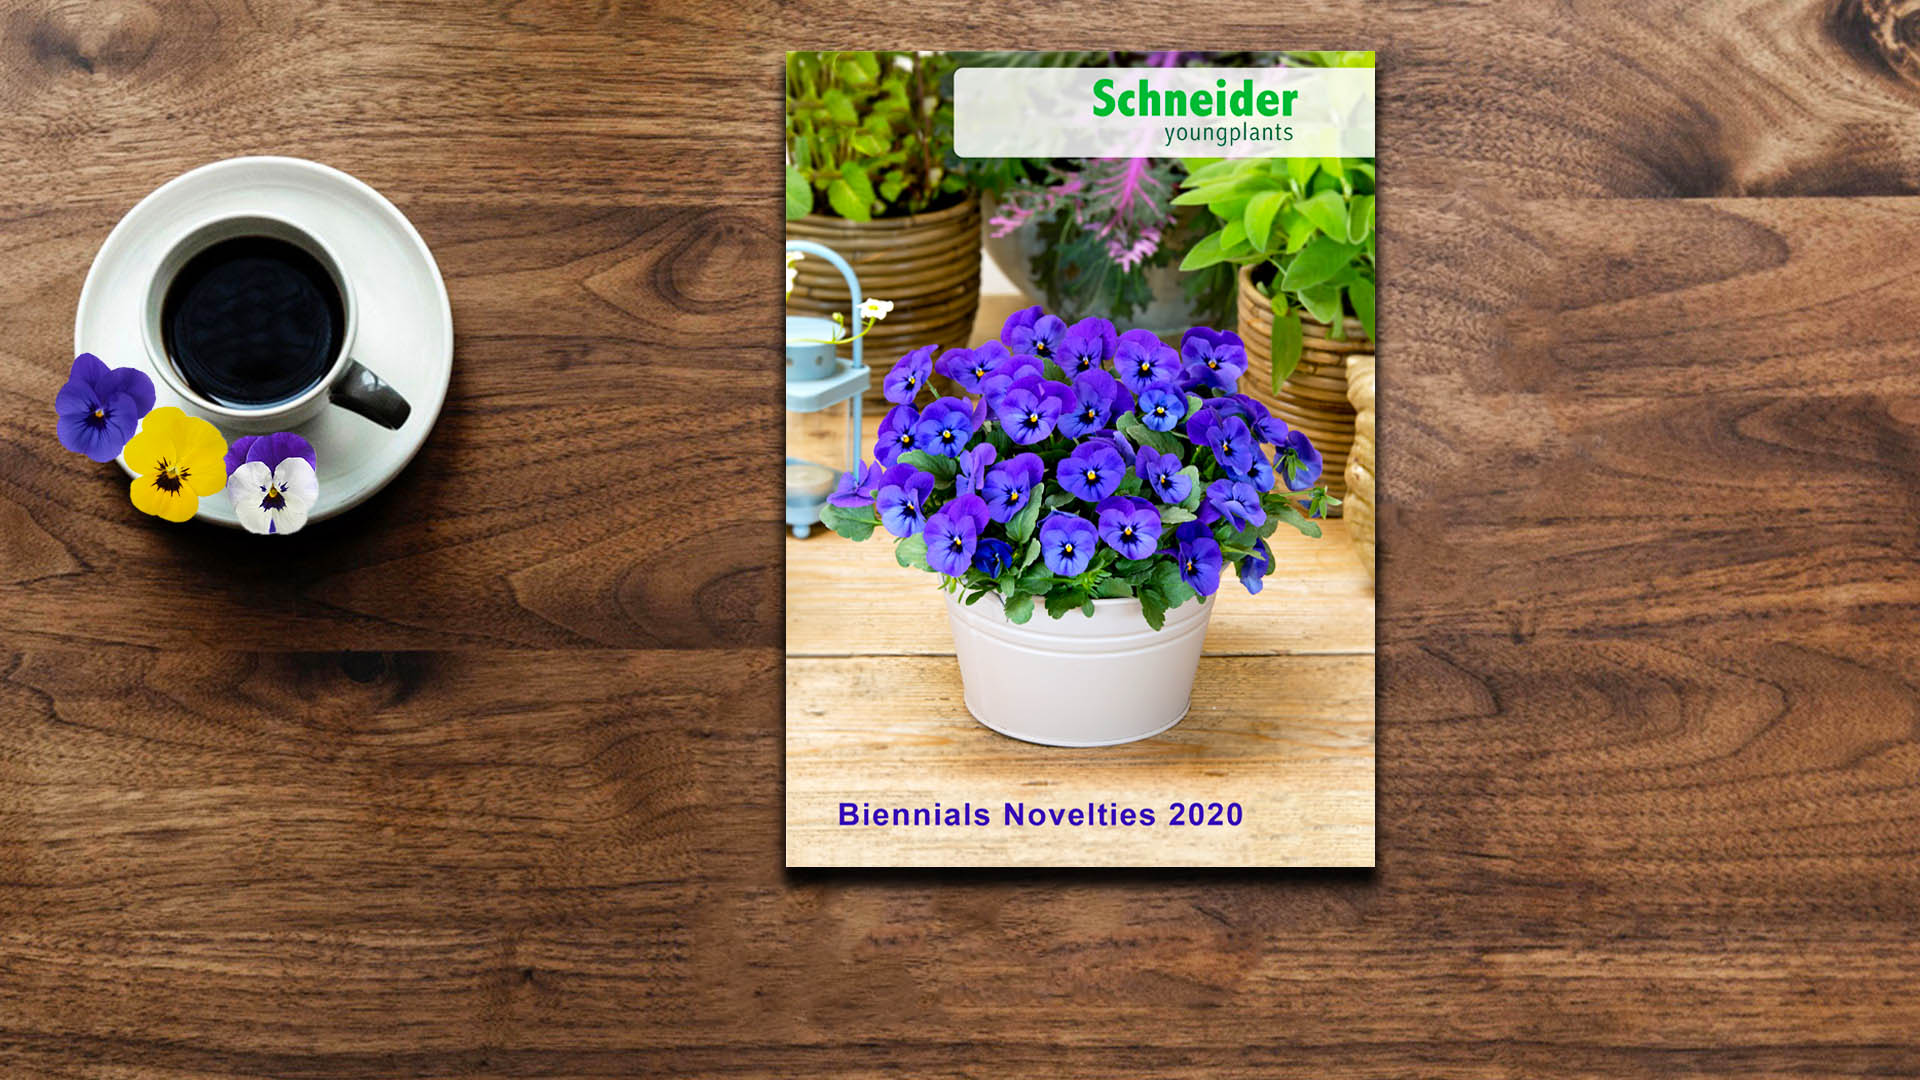 New Biennials Novelties 2020 catalogue!